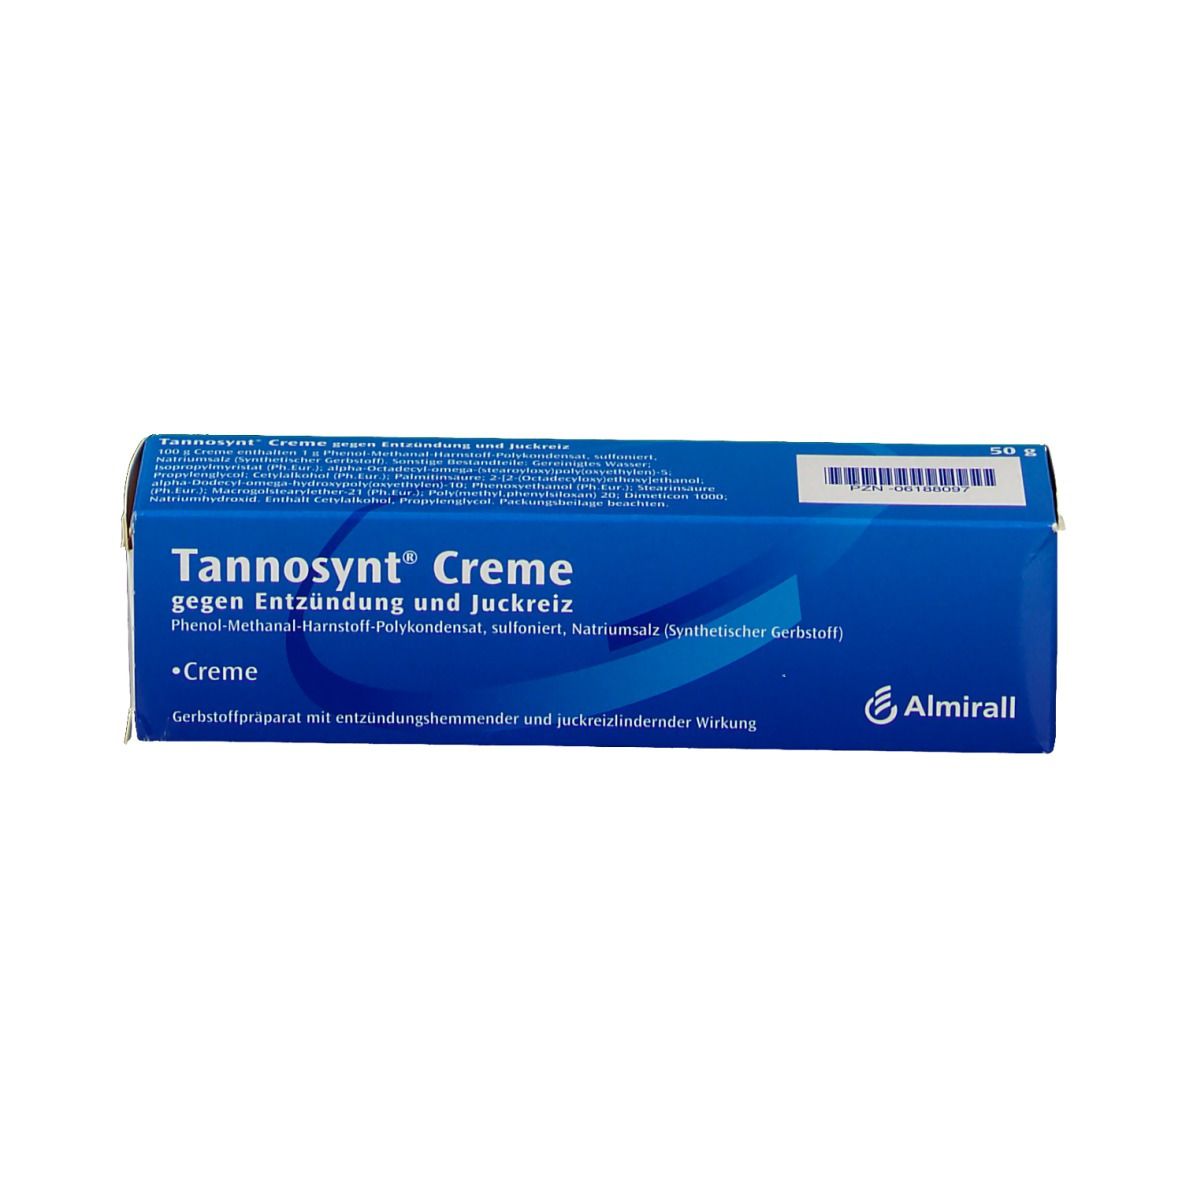 Tannosynt® Creme